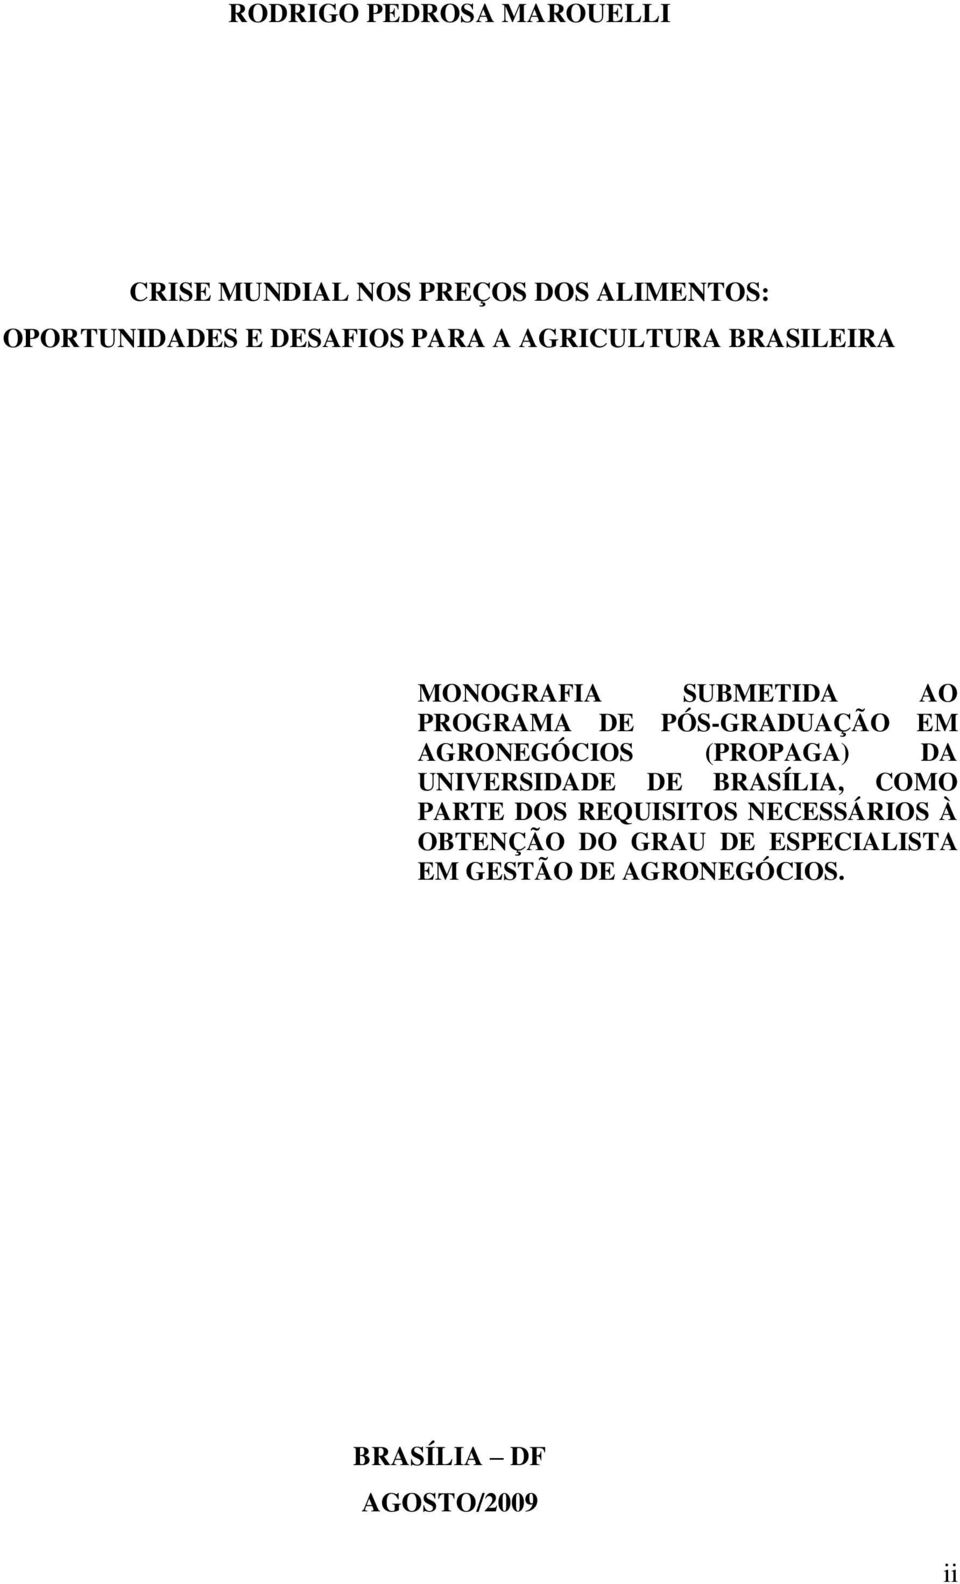 PÓS-GRADUAÇÃO EM AGRONEGÓCIOS (PROPAGA) DA UNIVERSIDADE DE BRASÍLIA, COMO PARTE DOS